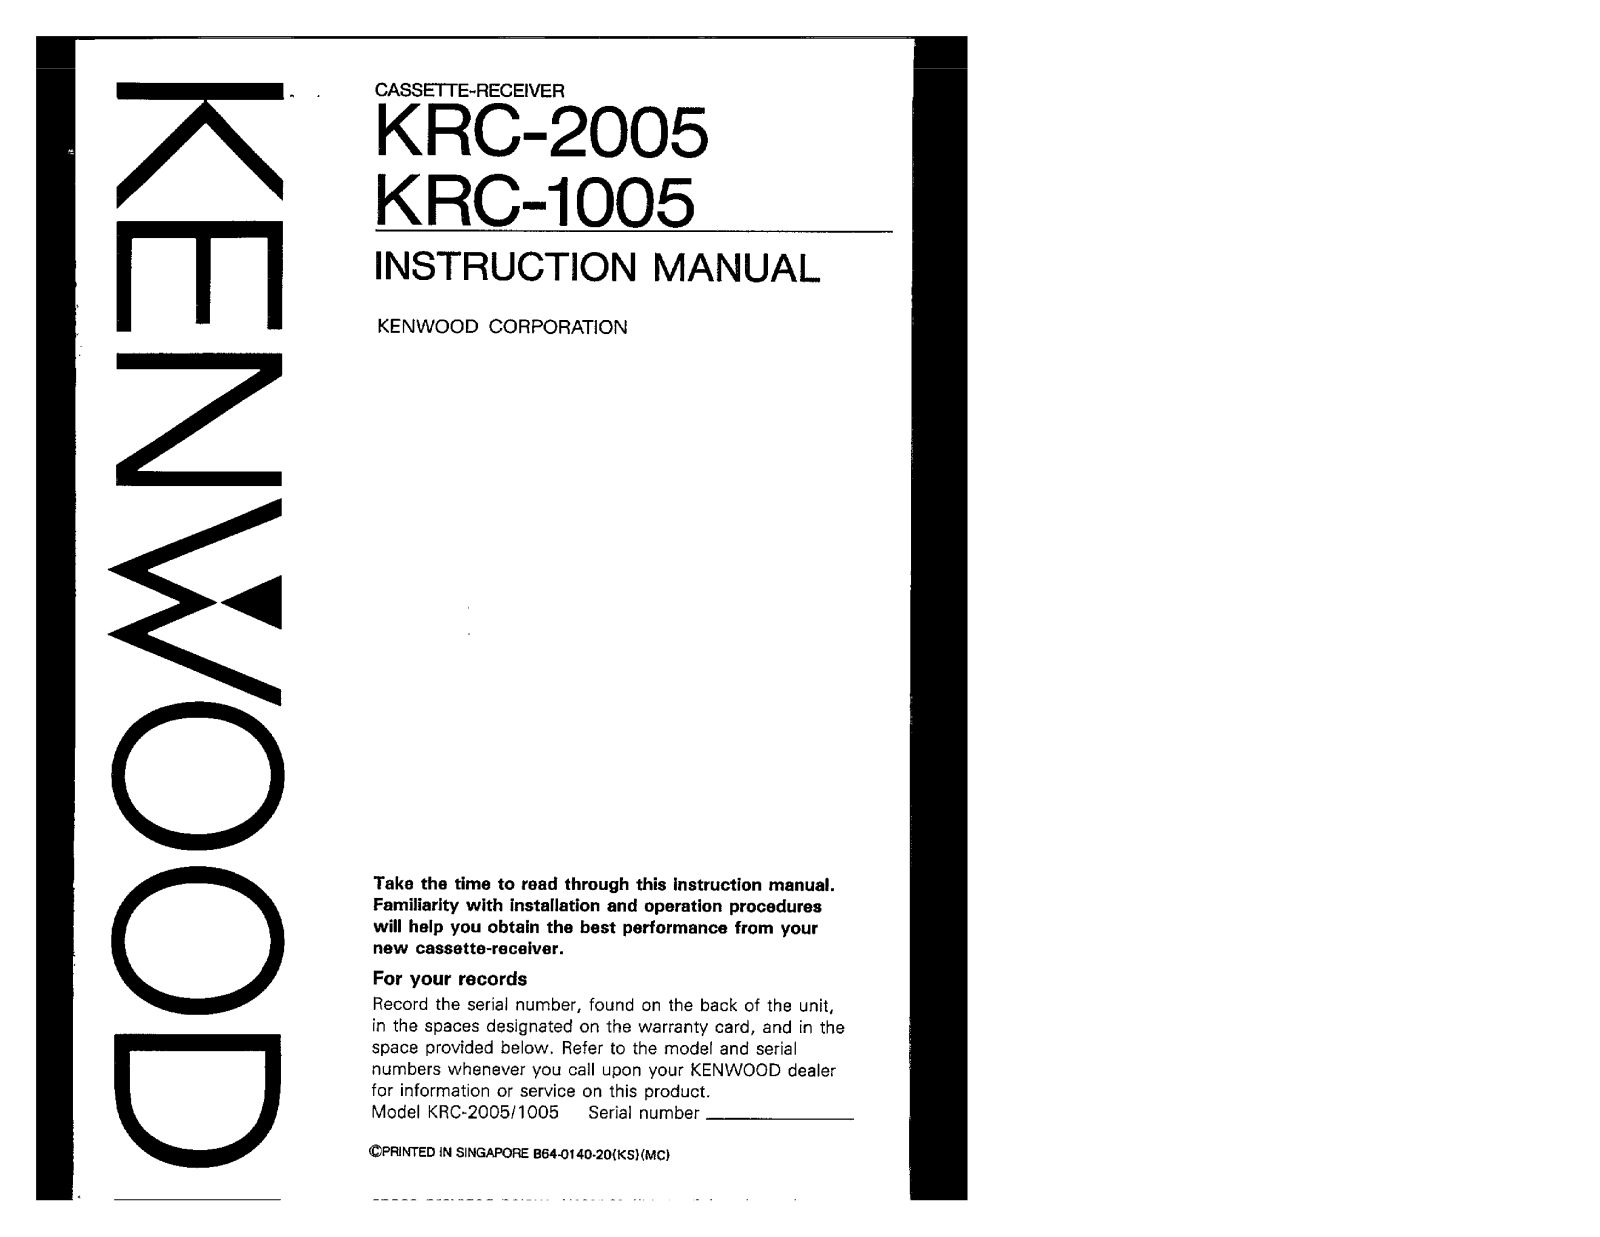 Kenwood KRC-2005, KRC-1005 Owner's Manual